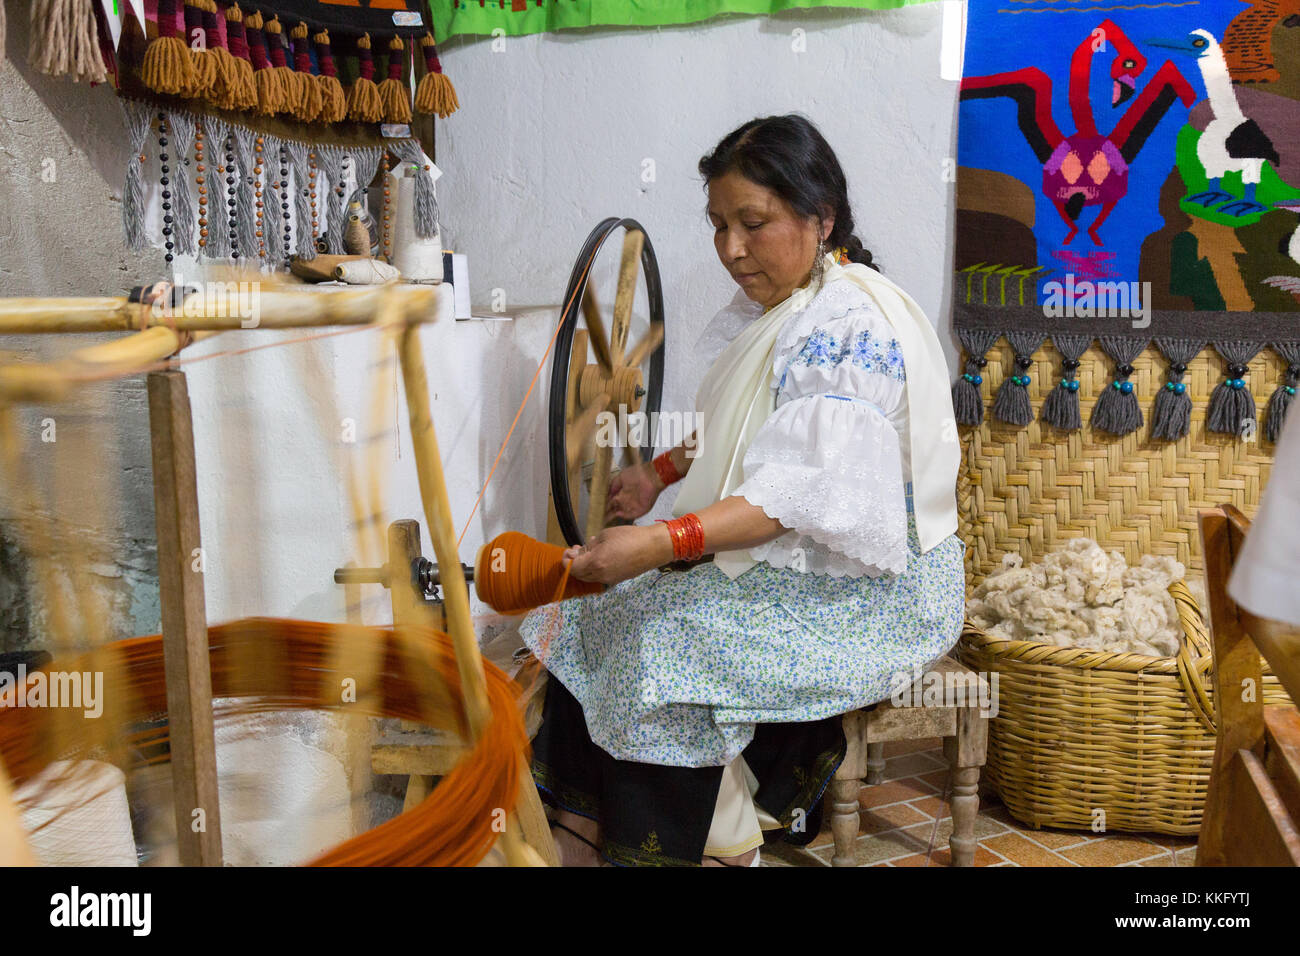 Culture équatorienne - une femme équatorienne mature utilisant un fil de rotation de roue traditionnelle pour fabriquer des textiles, Otavalo, Equateur, Amérique du Sud Banque D'Images